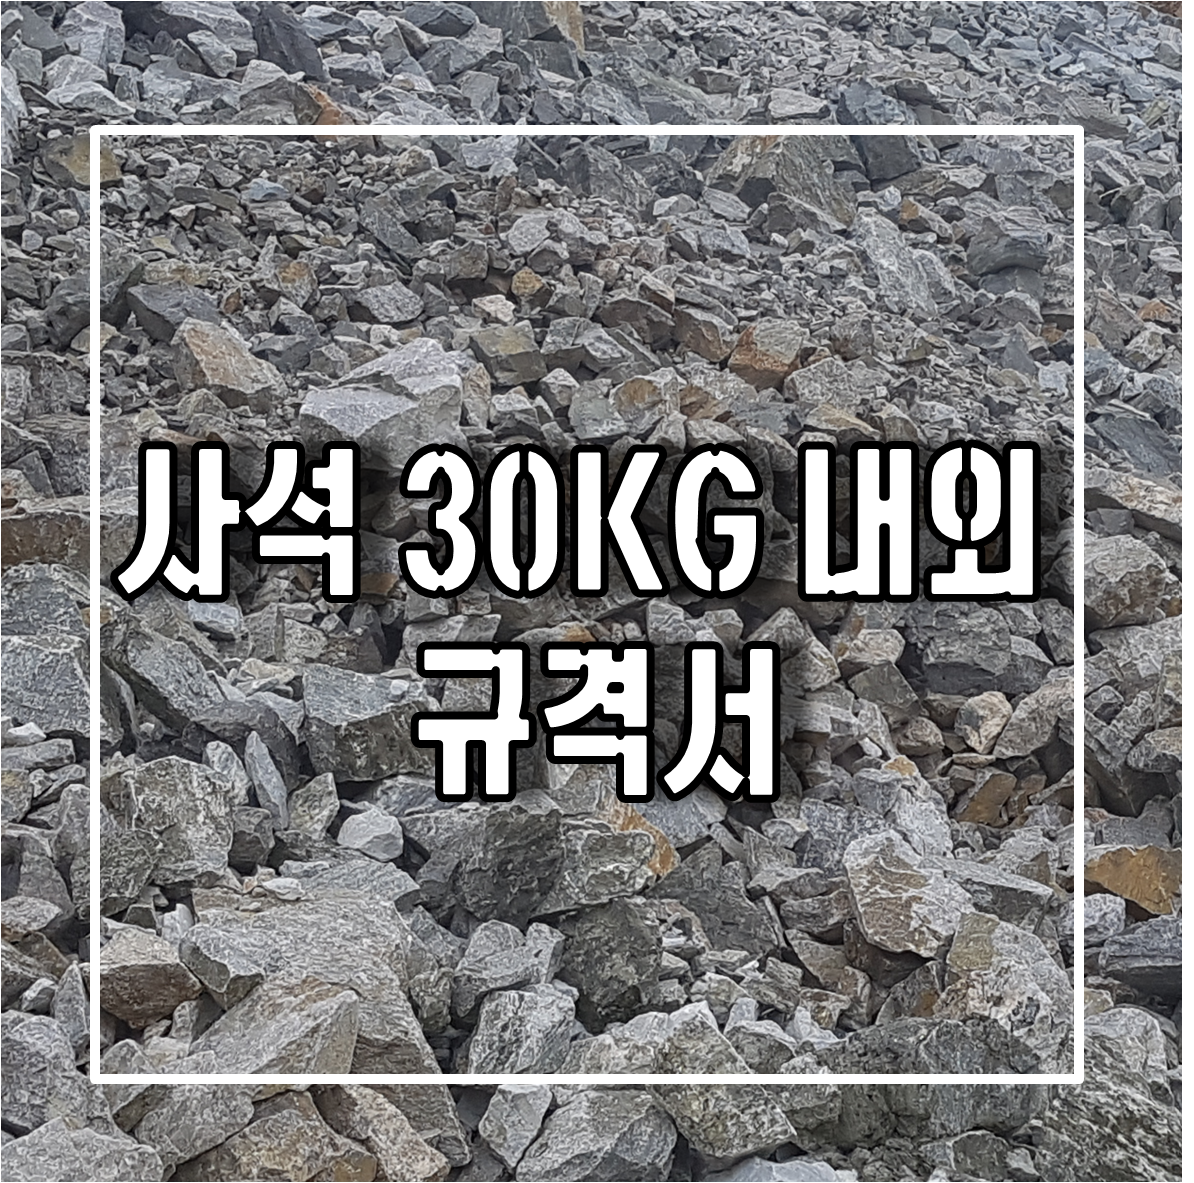 토목용 자재인 사석 30KG 내외 규격서